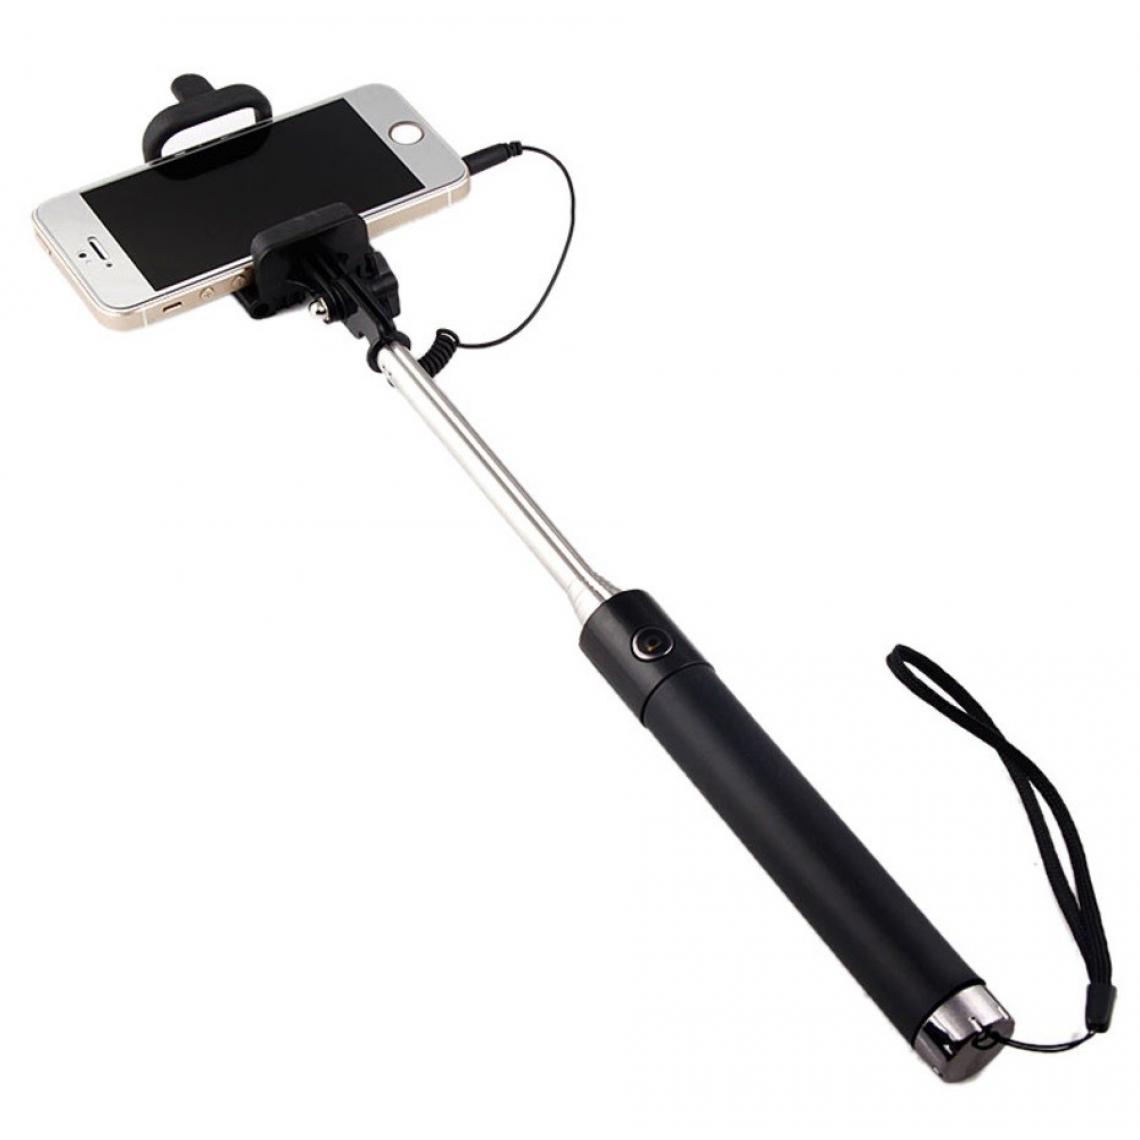 Shot - Perche Selfie Metal pour "HUAWEI P40 lite 5G" Smartphone avec Cable Jack Selfie Stick Android IOS Reglable Bouton Photo (NOIR) - Autres accessoires smartphone